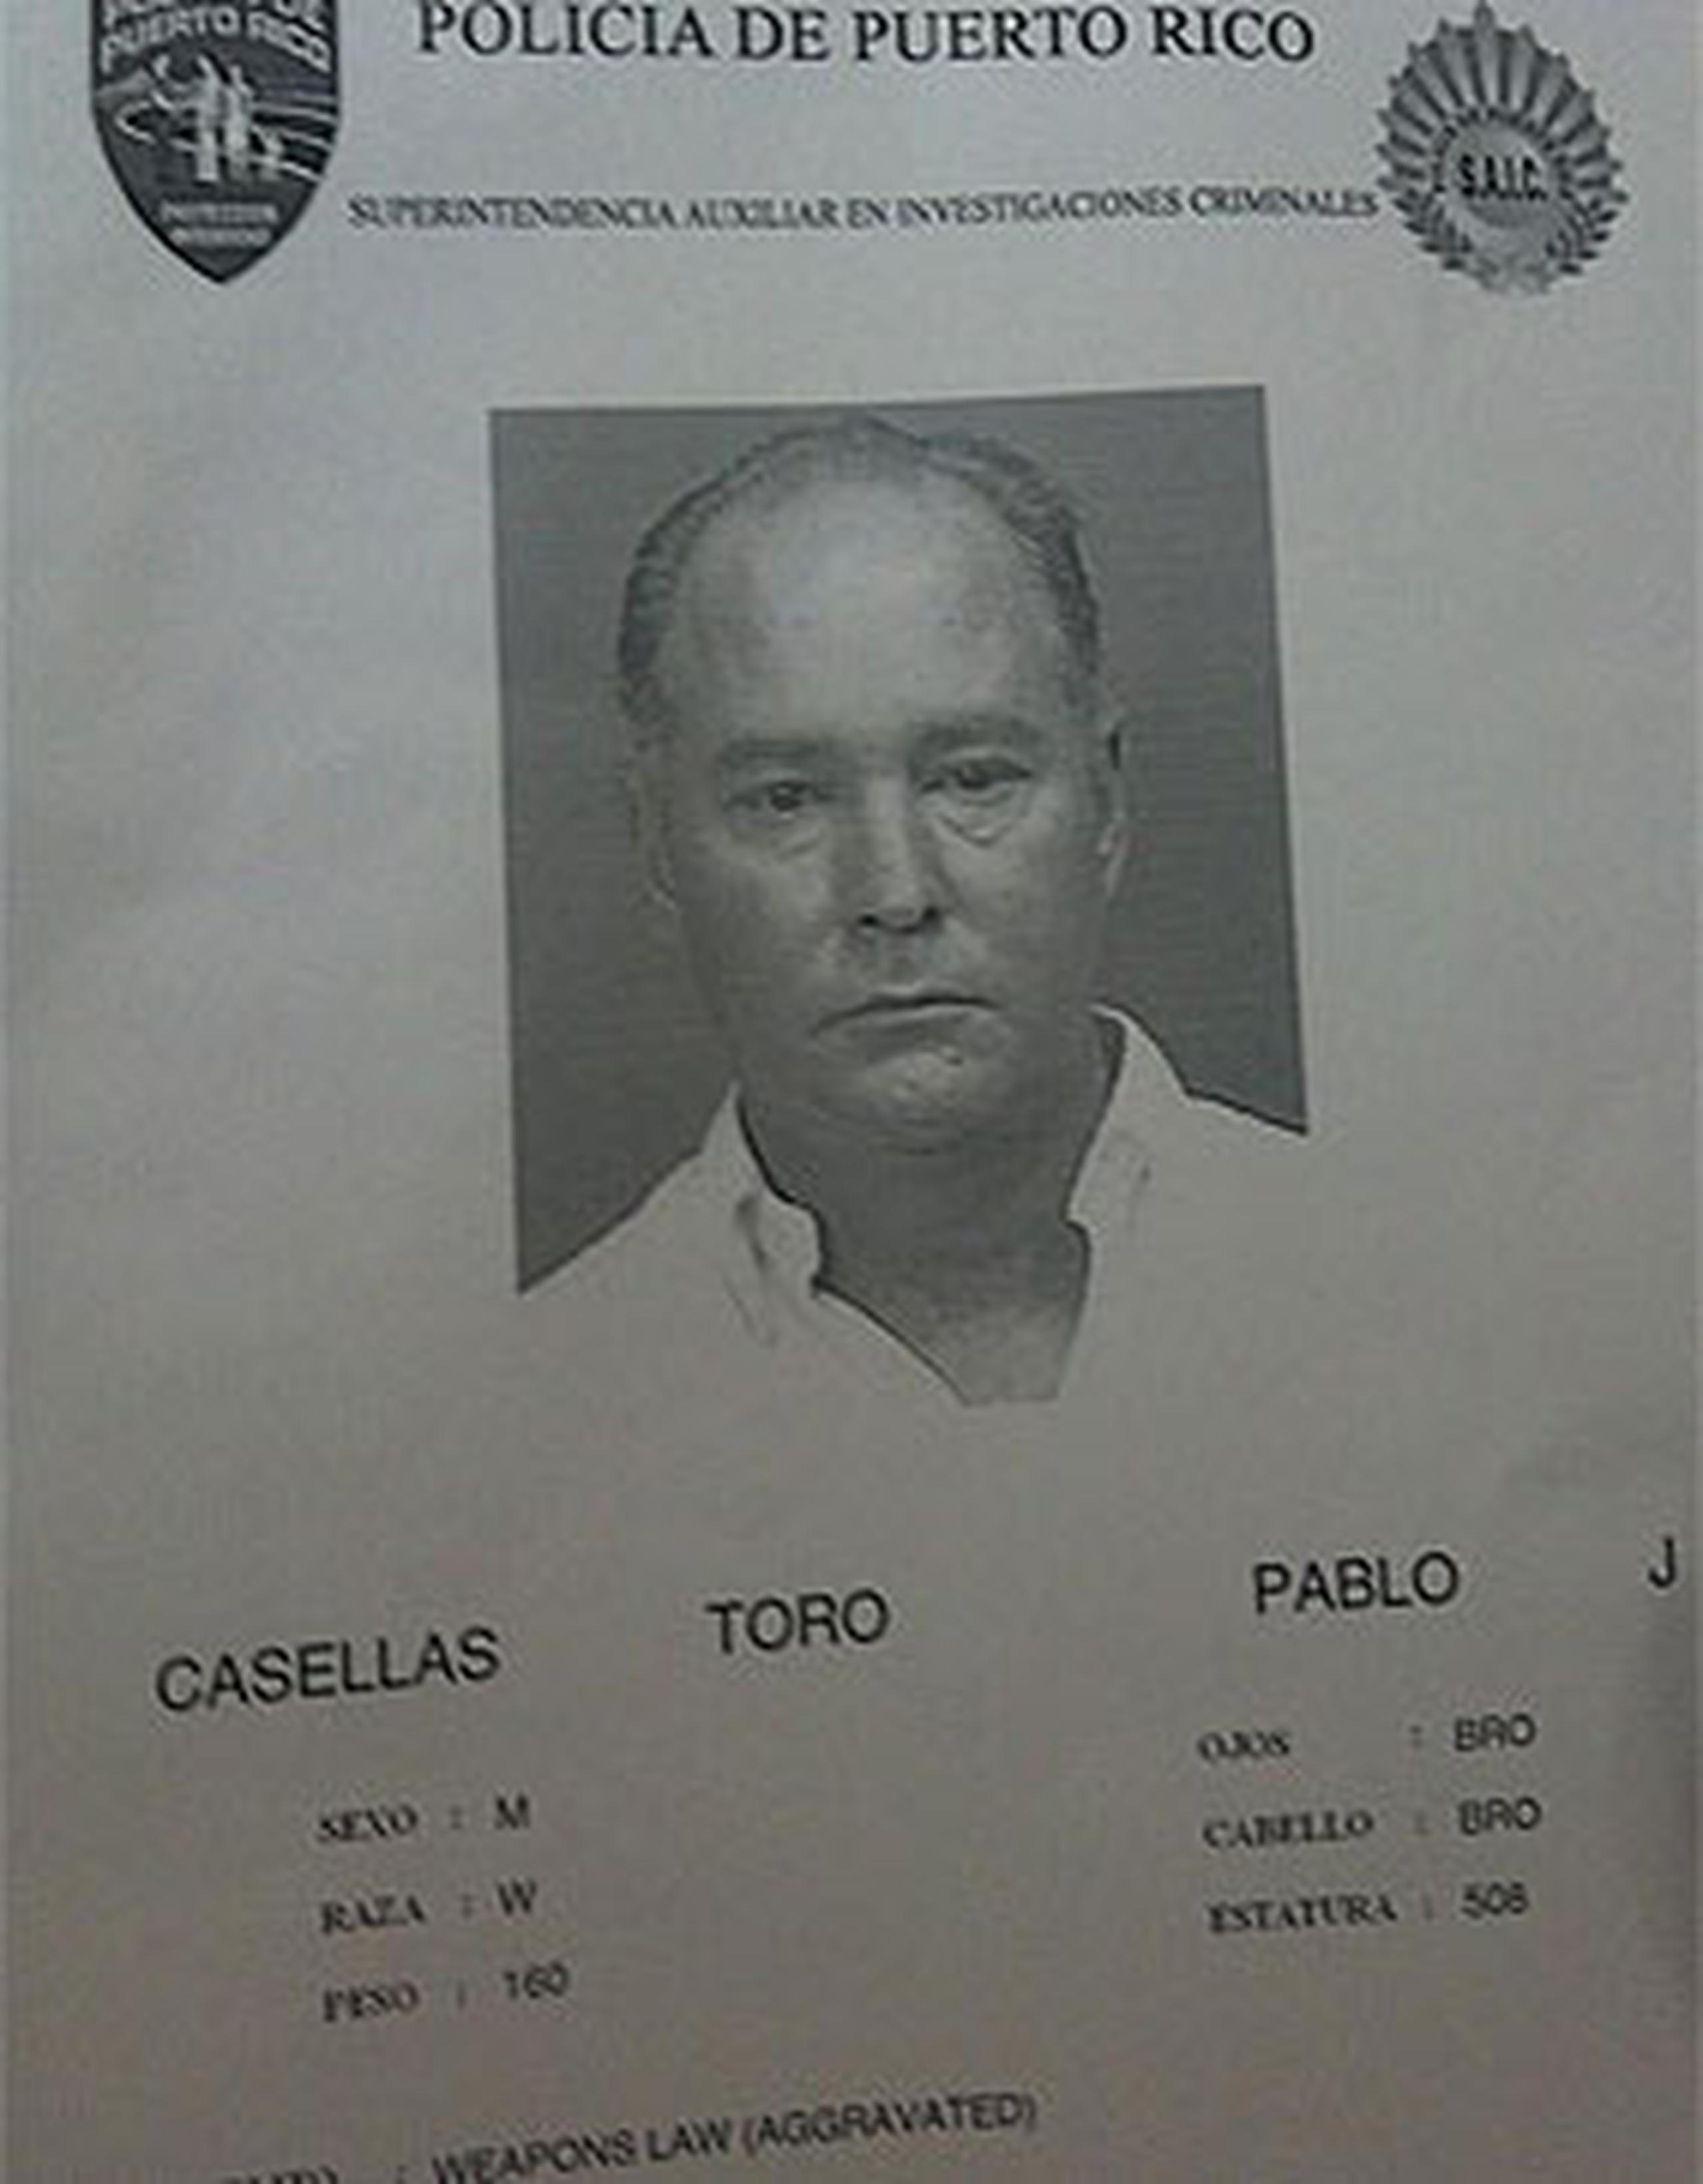 El juez Rafael Villafañe Riera halló causa para el arresto de Pablo Casellas por todos los cargos imputados. (Ficha de la Policía)